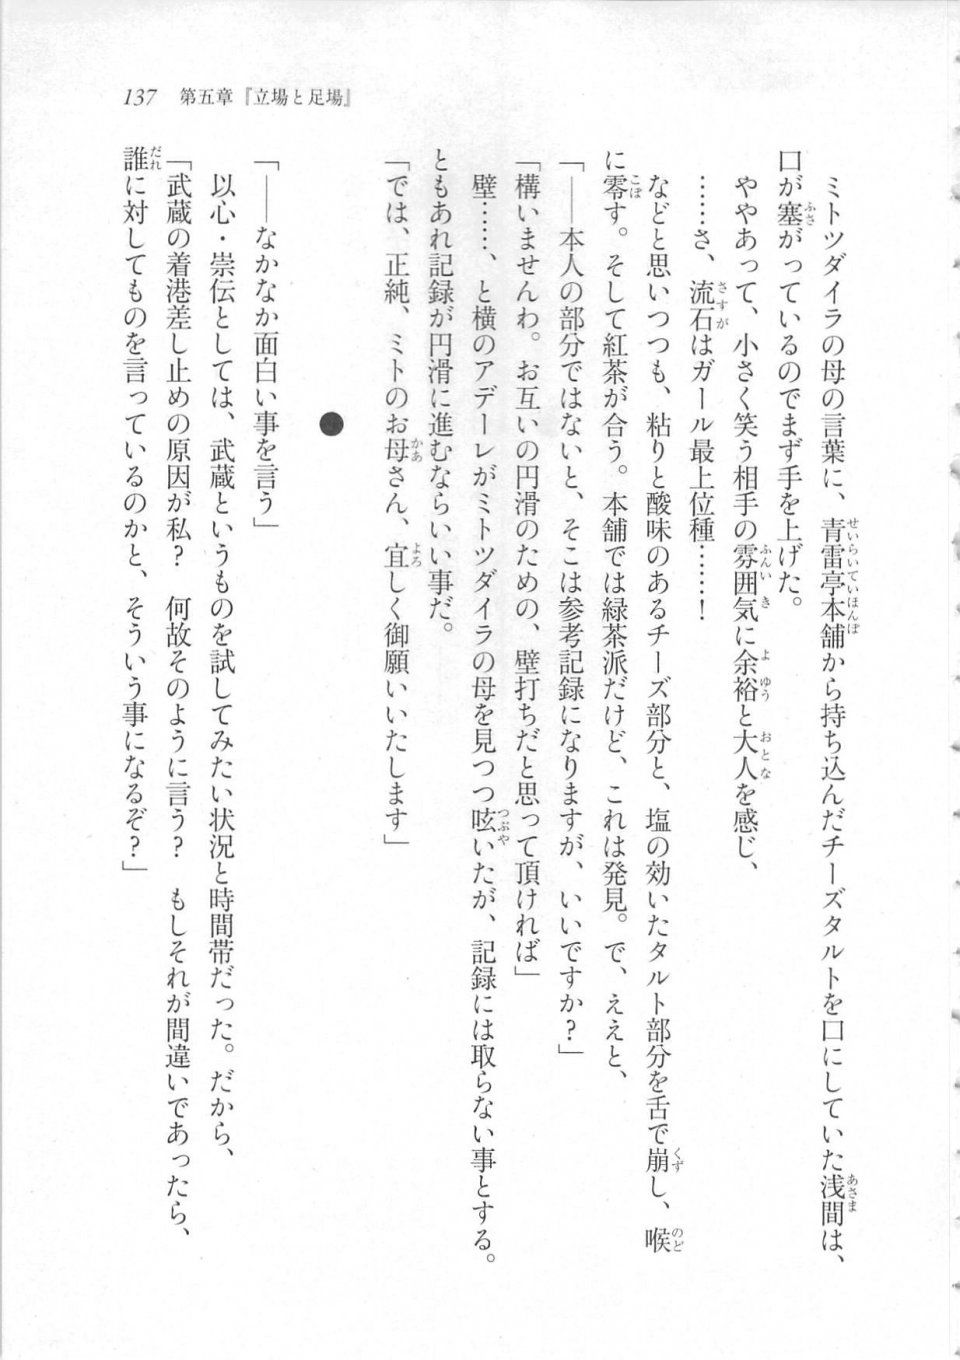 Kyoukai Senjou no Horizon LN Sidestory Vol 3 - Photo #141